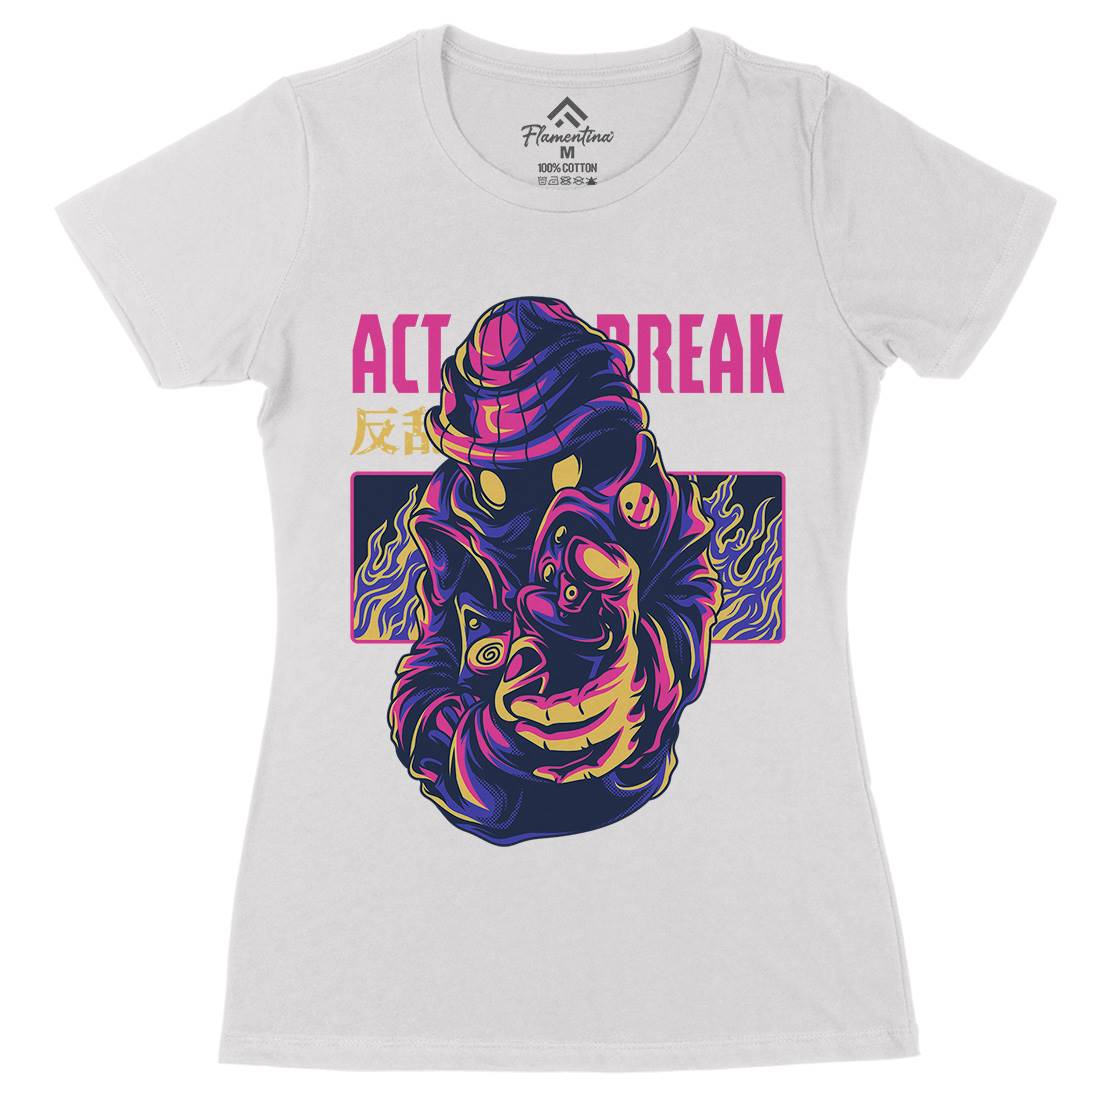 Act Break Womens Organic Crew Neck T-Shirt Graffiti D700